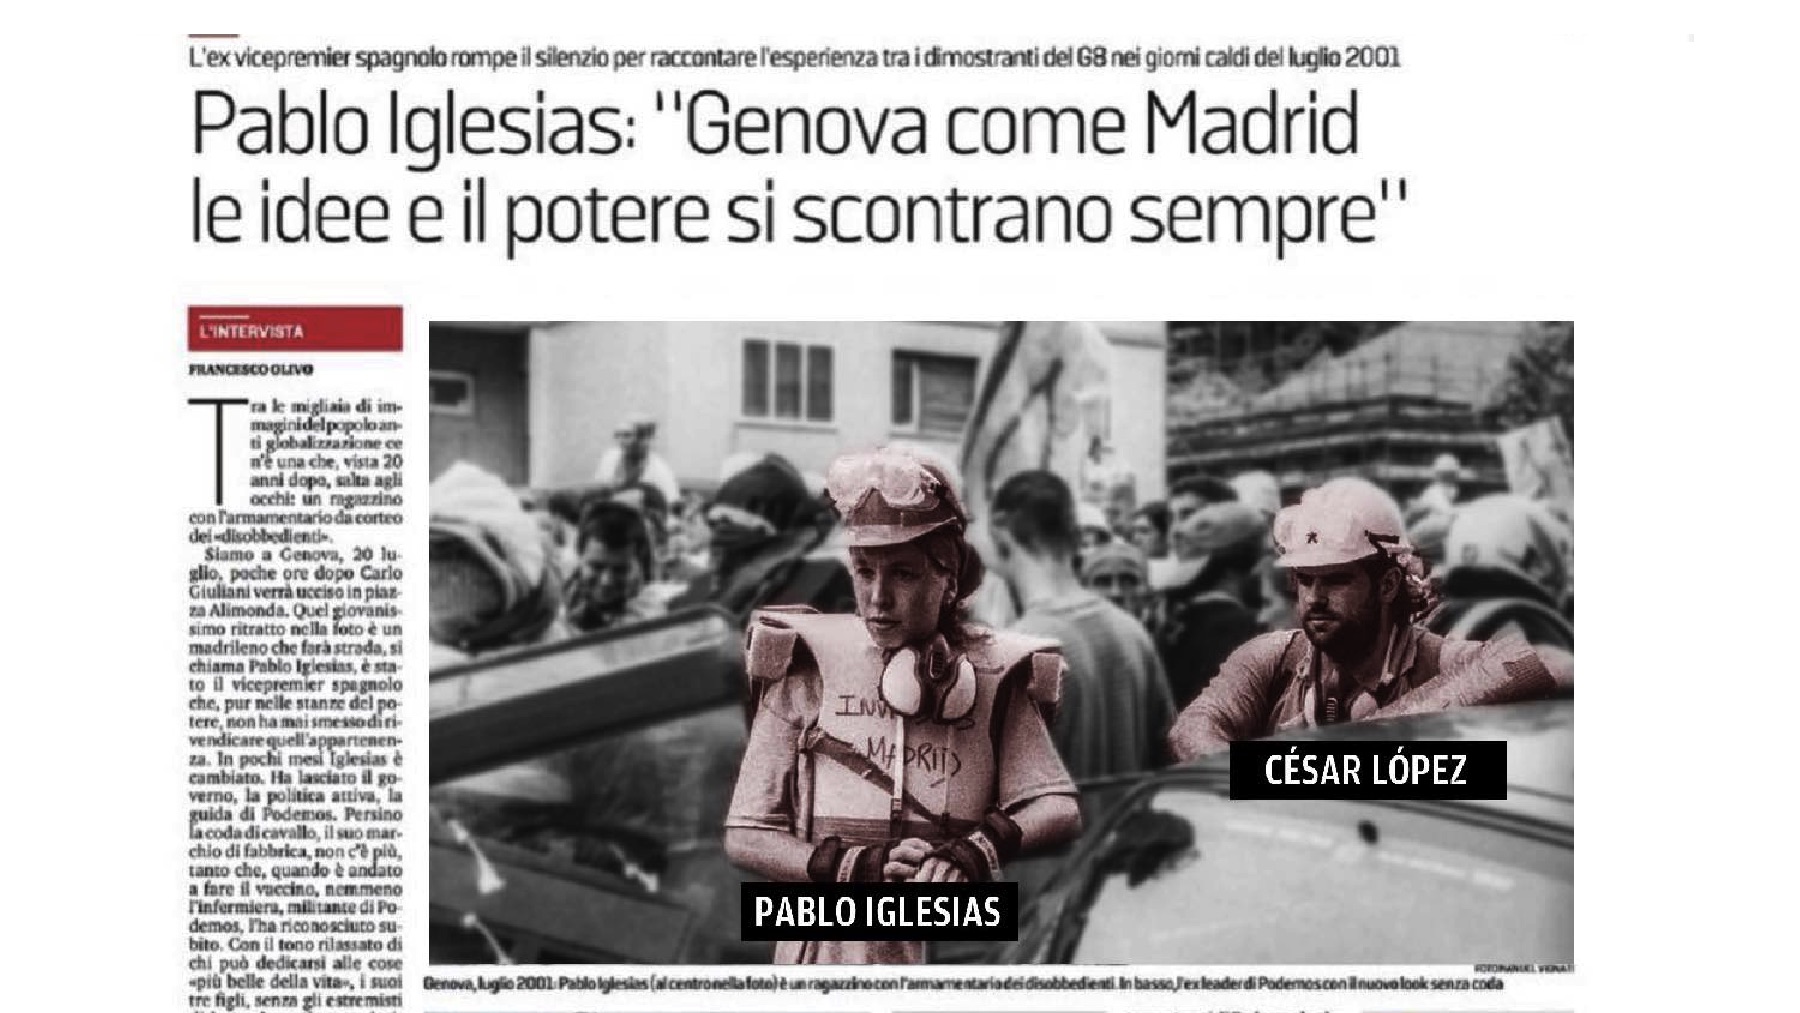 Entrevista de Pablo Iglesias en ‘La Stampa’ donde aparece César López.